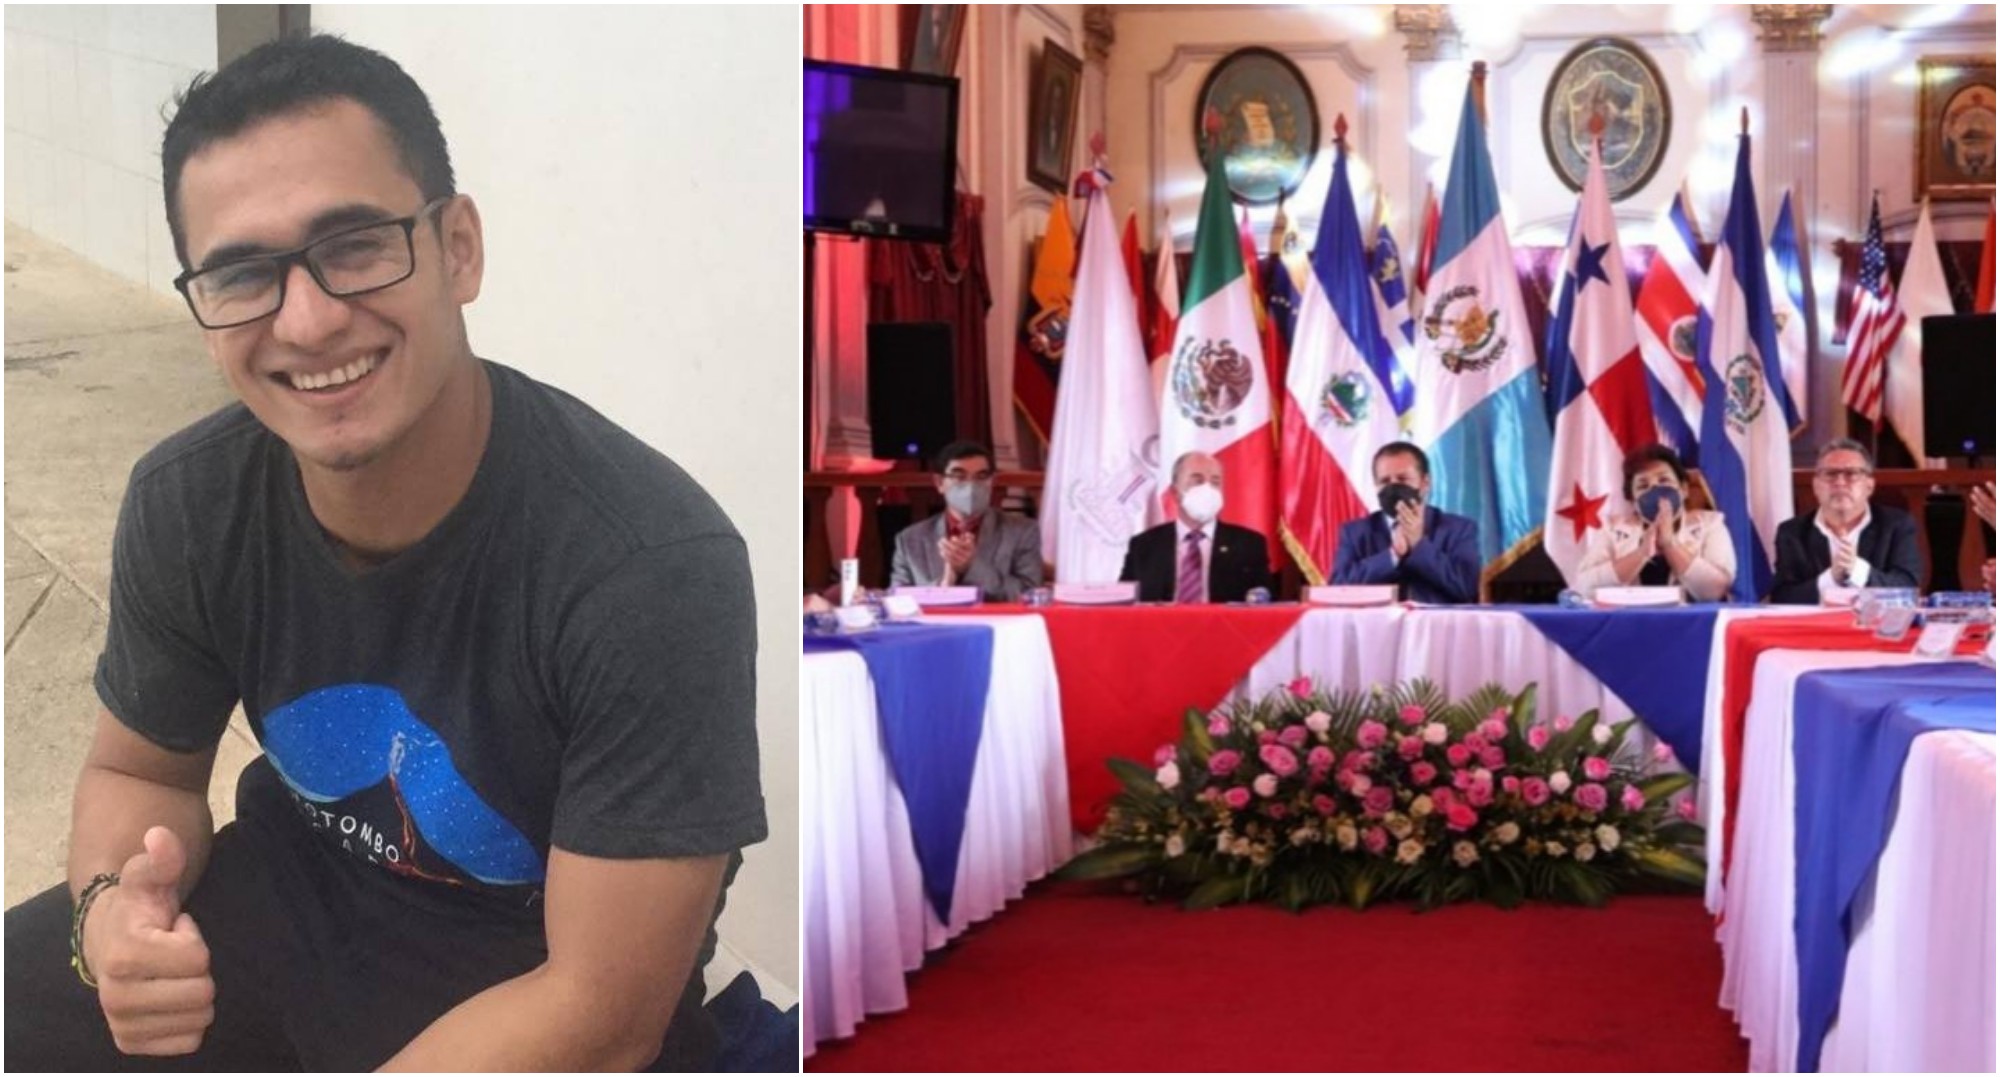 Hondureño obtiene el premio de poesía en los Juegos Florales 2022